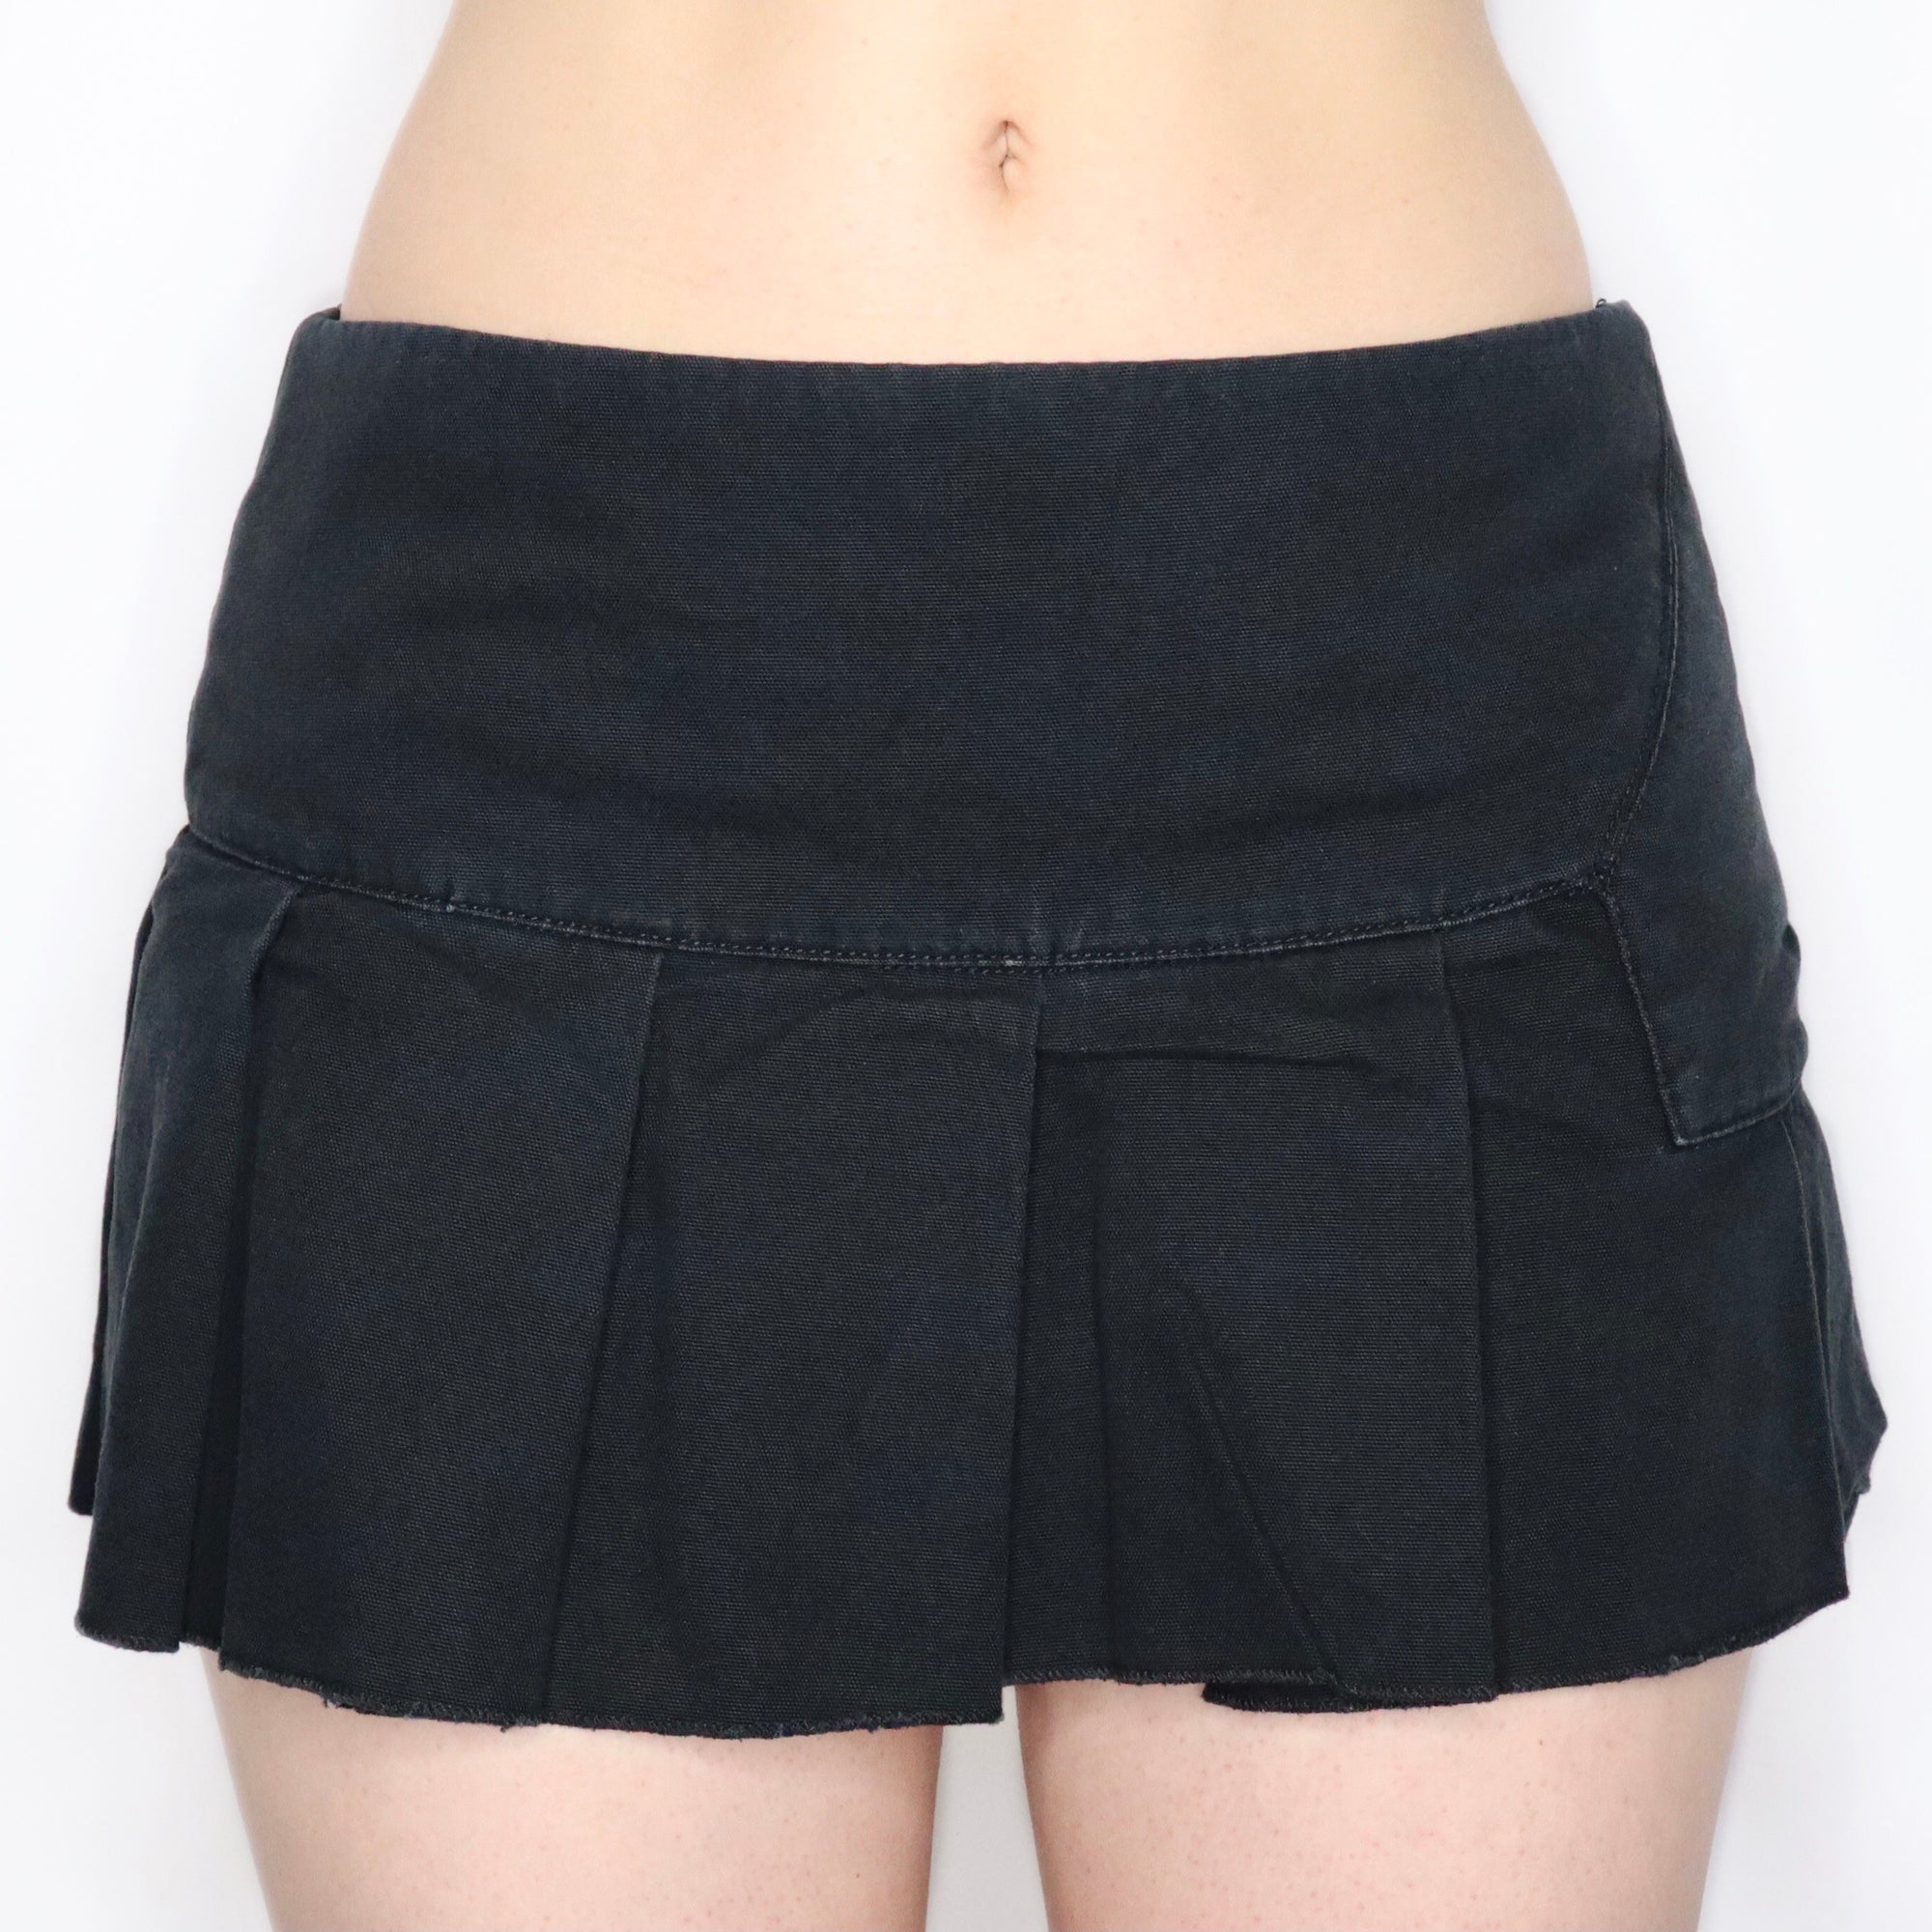 Vintage Early 2000s Pleated Black Mini Skirt